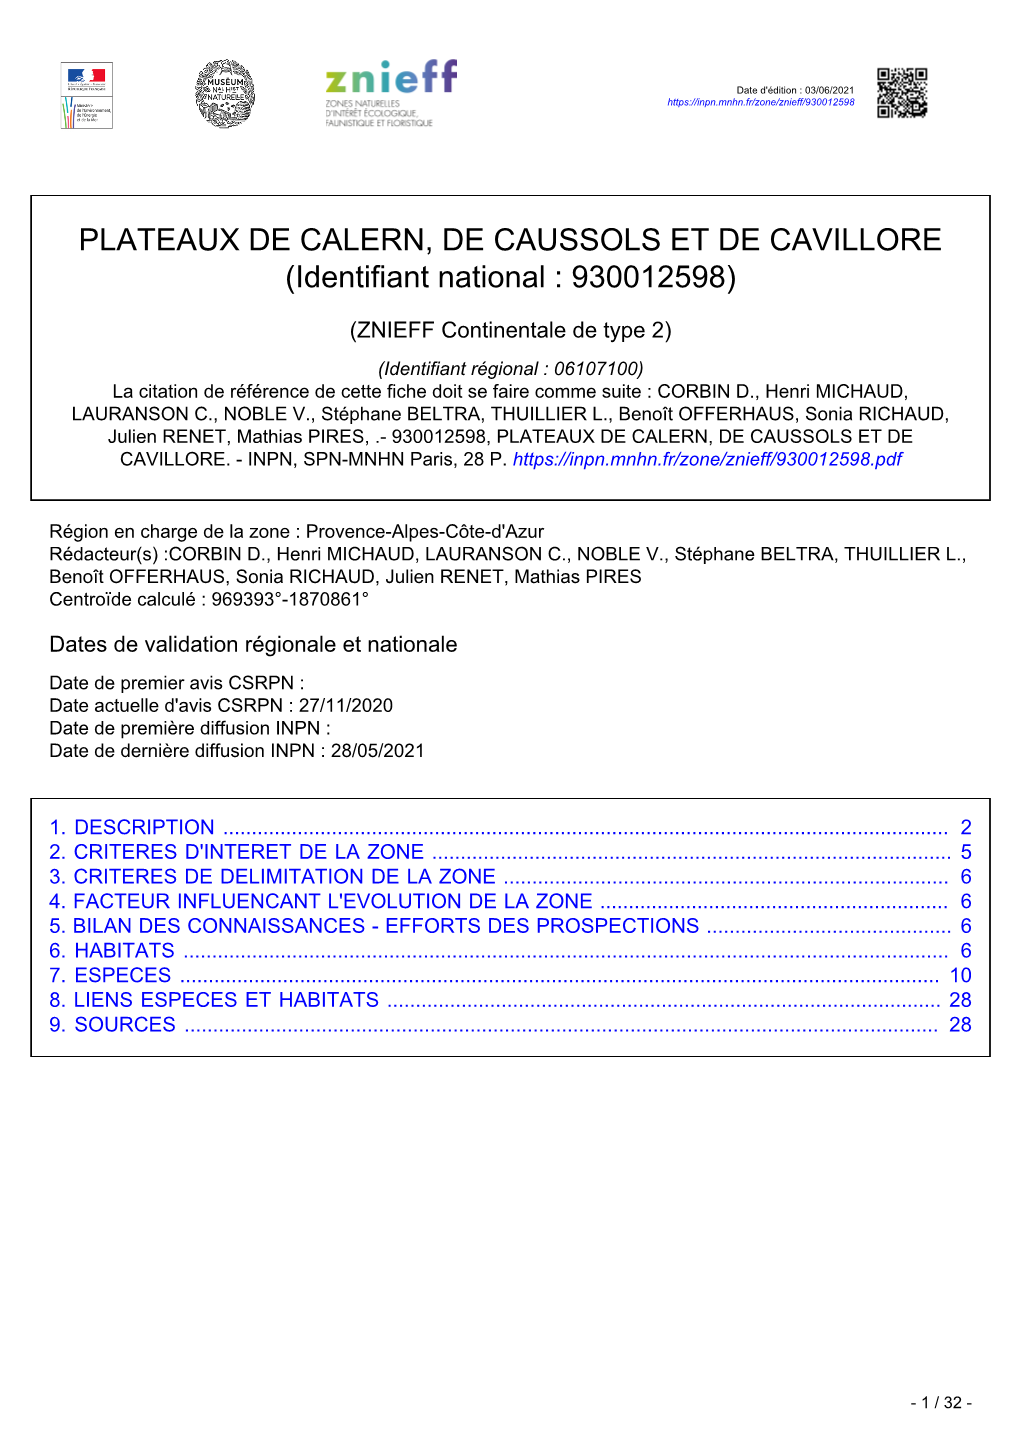 PLATEAUX DE CALERN, DE CAUSSOLS ET DE CAVILLORE (Identifiant National : 930012598)